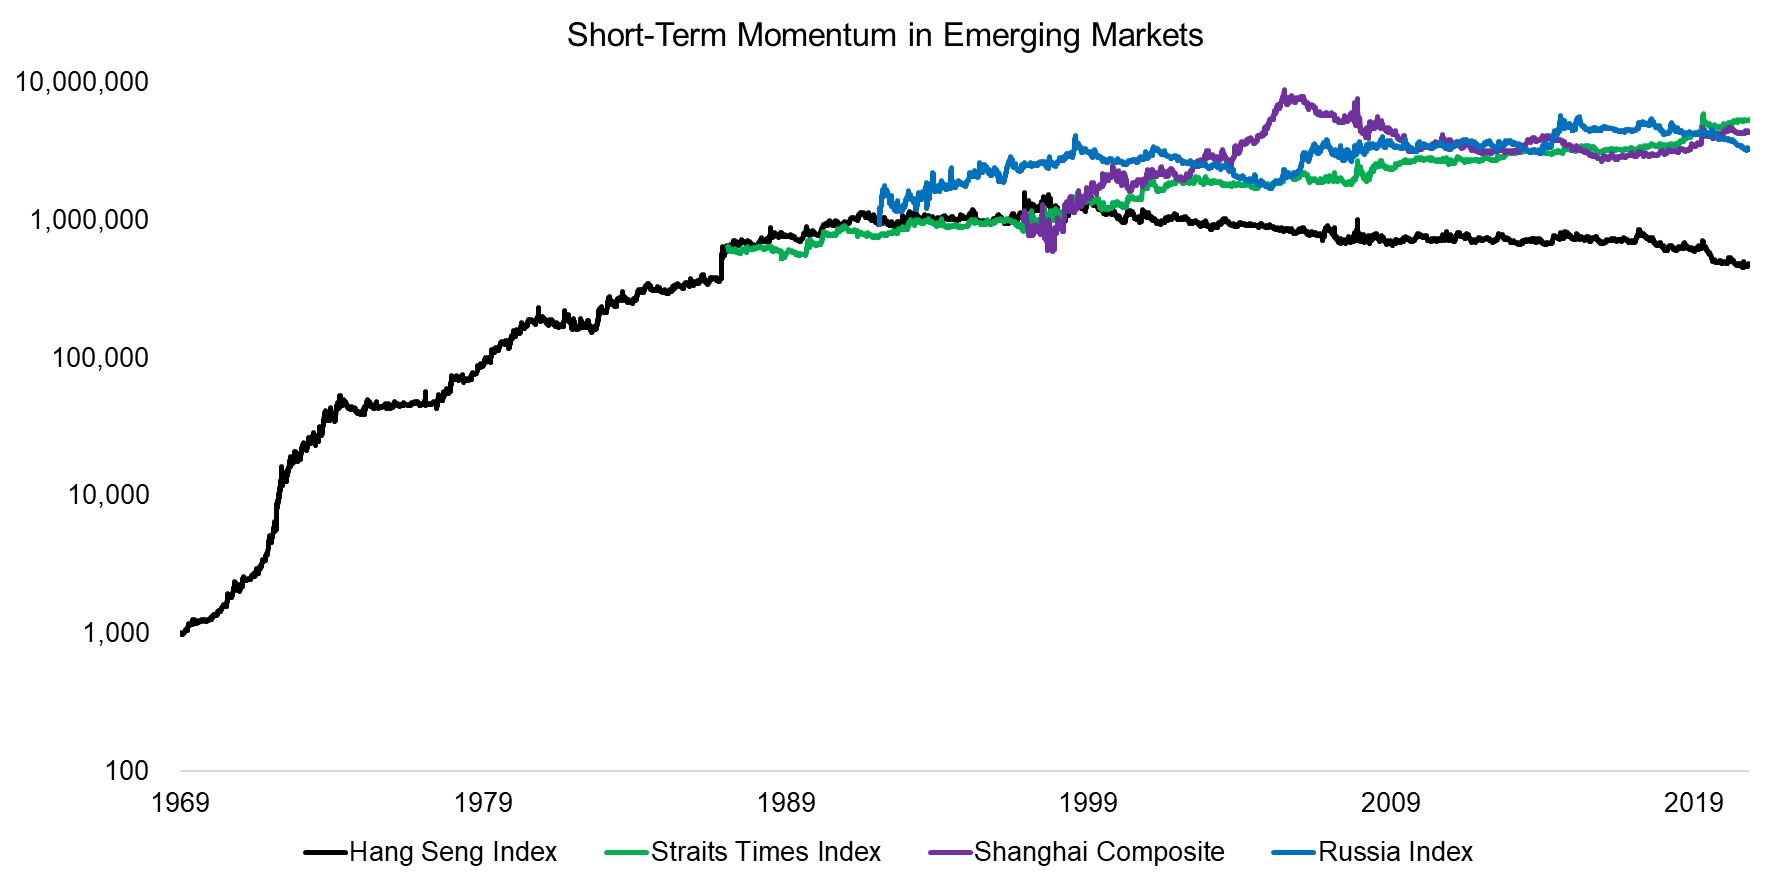 Short-Term Momentum in Emerging Markets